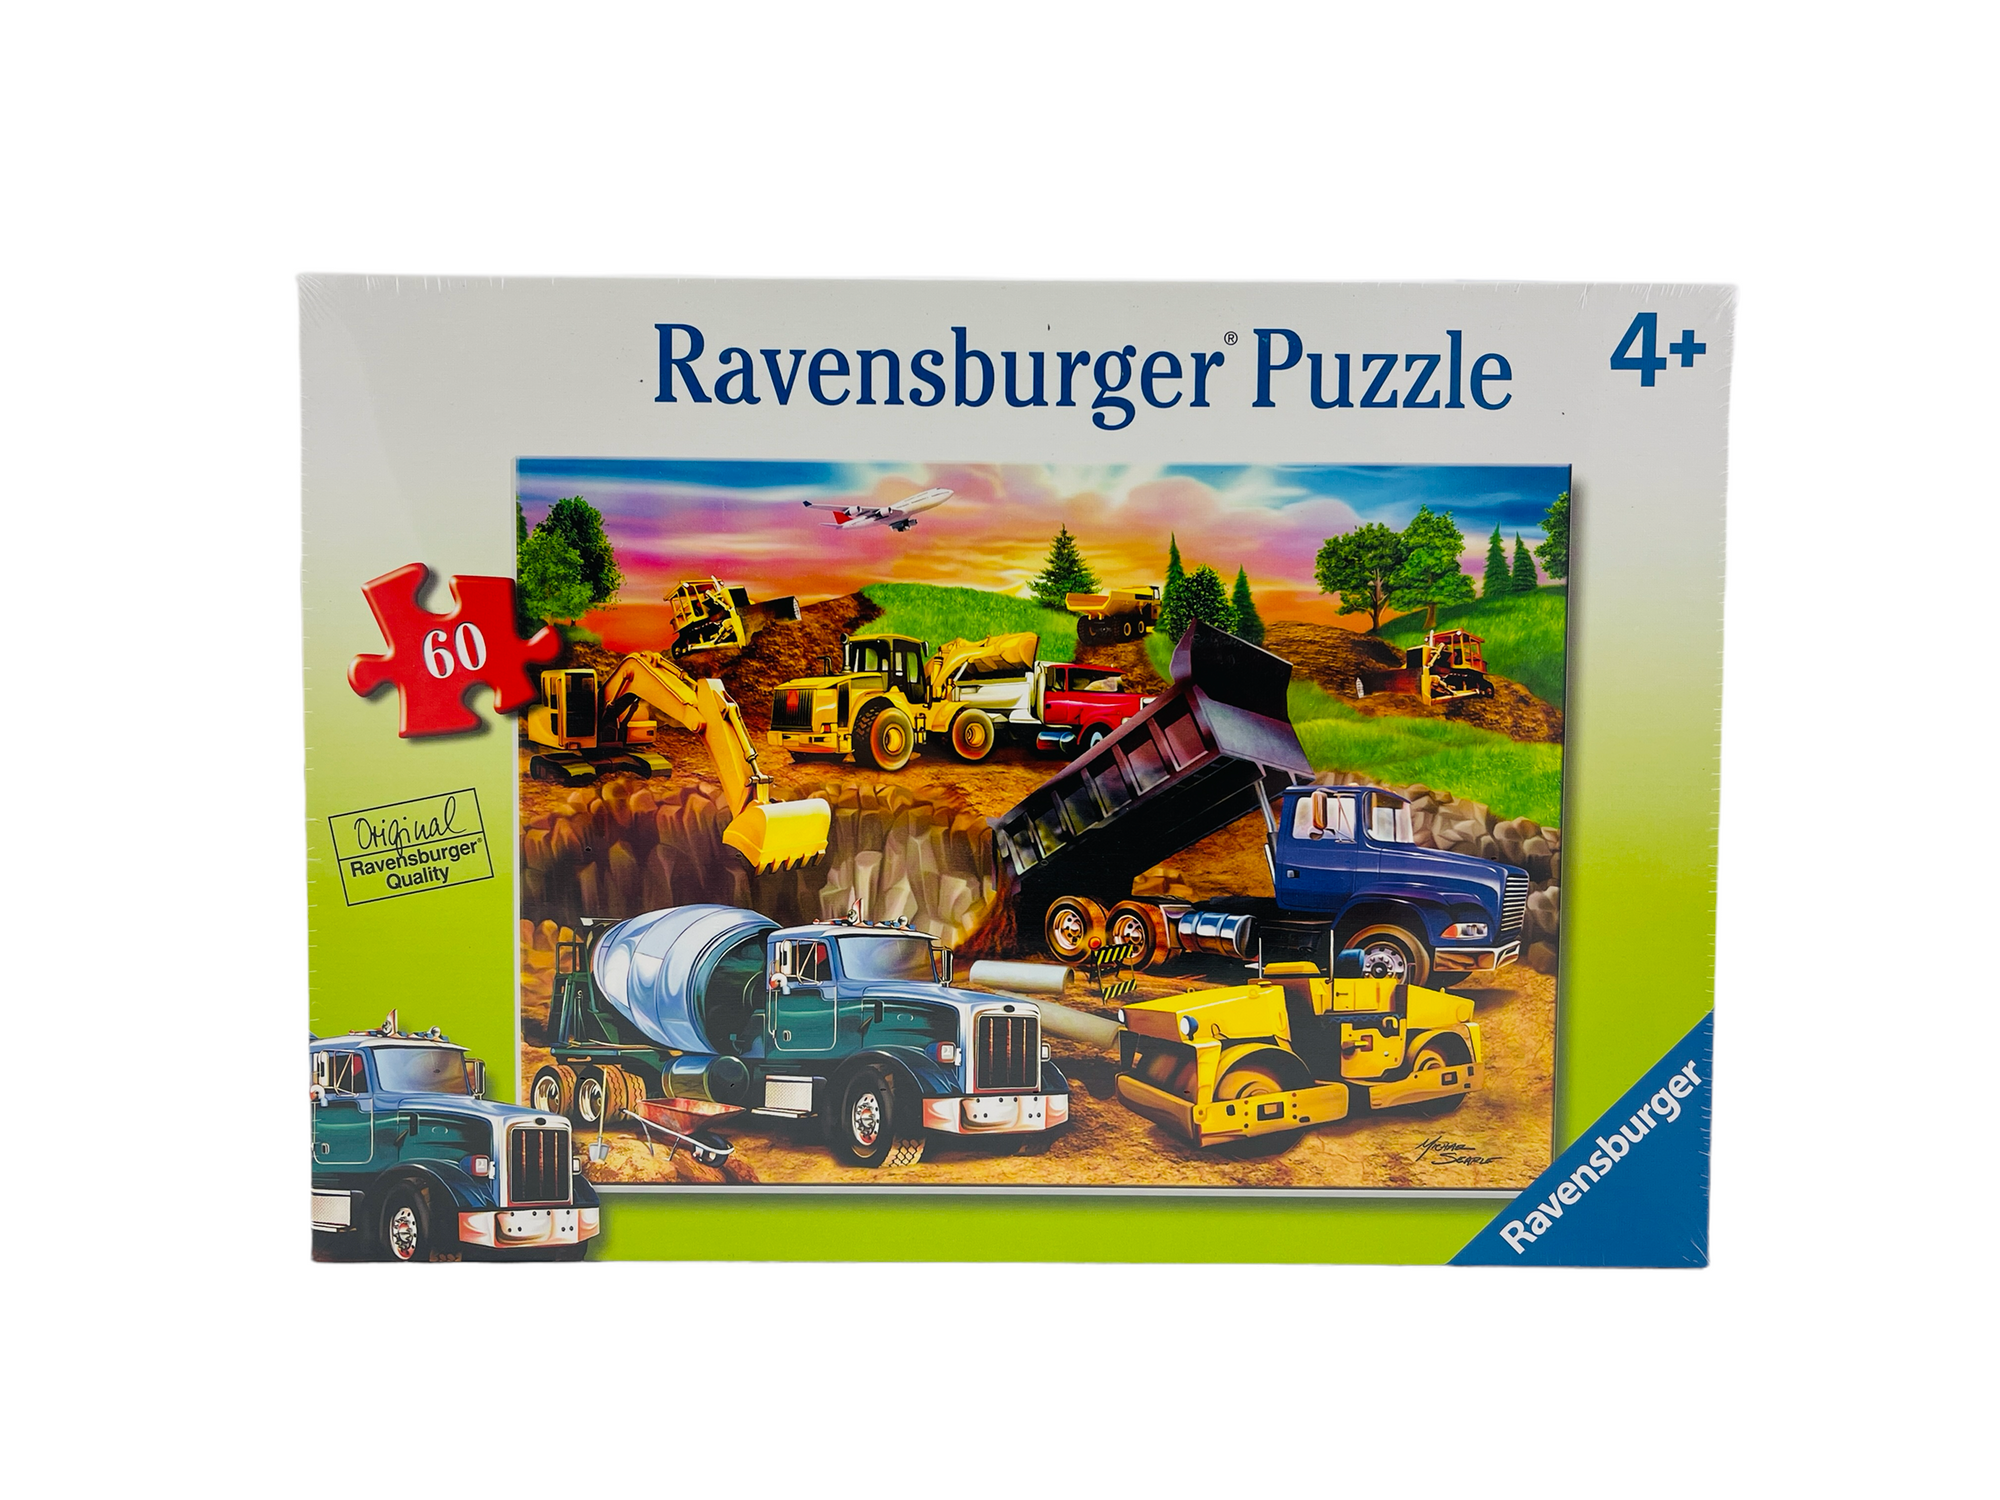 Ravensburger Puzzle - Construction Crowd 60